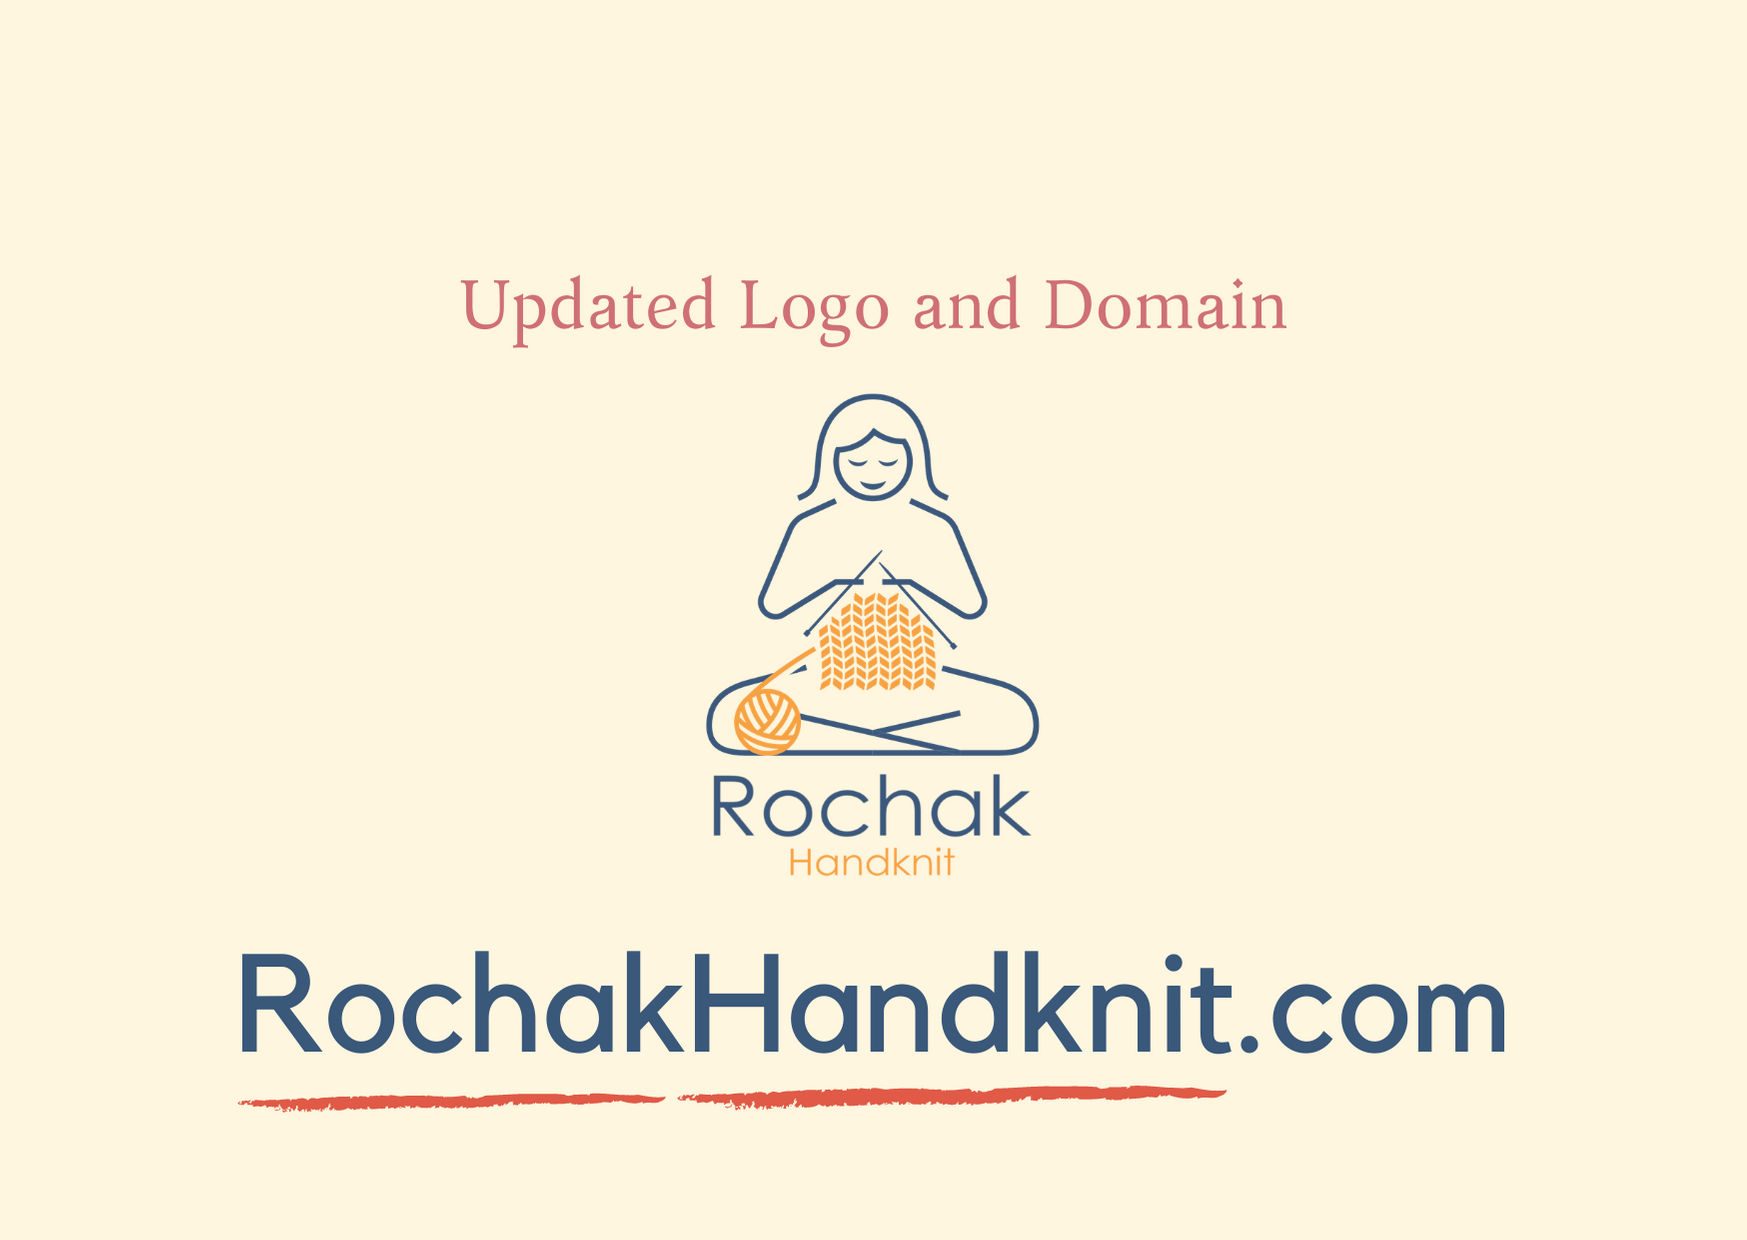 Päivitetty Rochak handknitin logo ja verkkotunnus